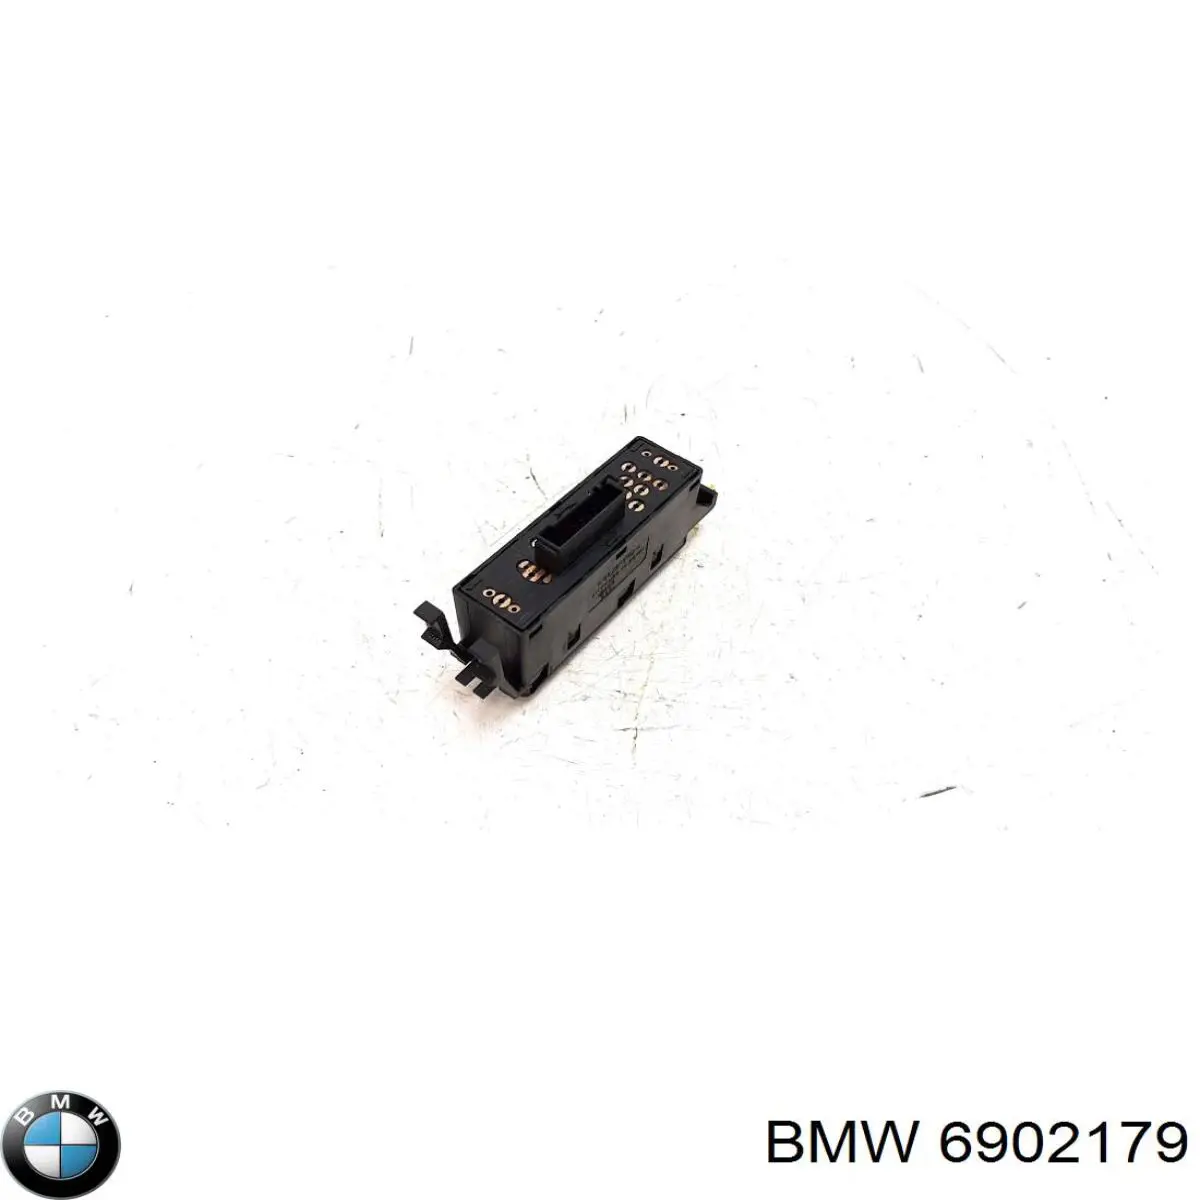 Botón de encendido, motor eléctrico, elevalunas, puerta delantera derecha para BMW 3 (E36)